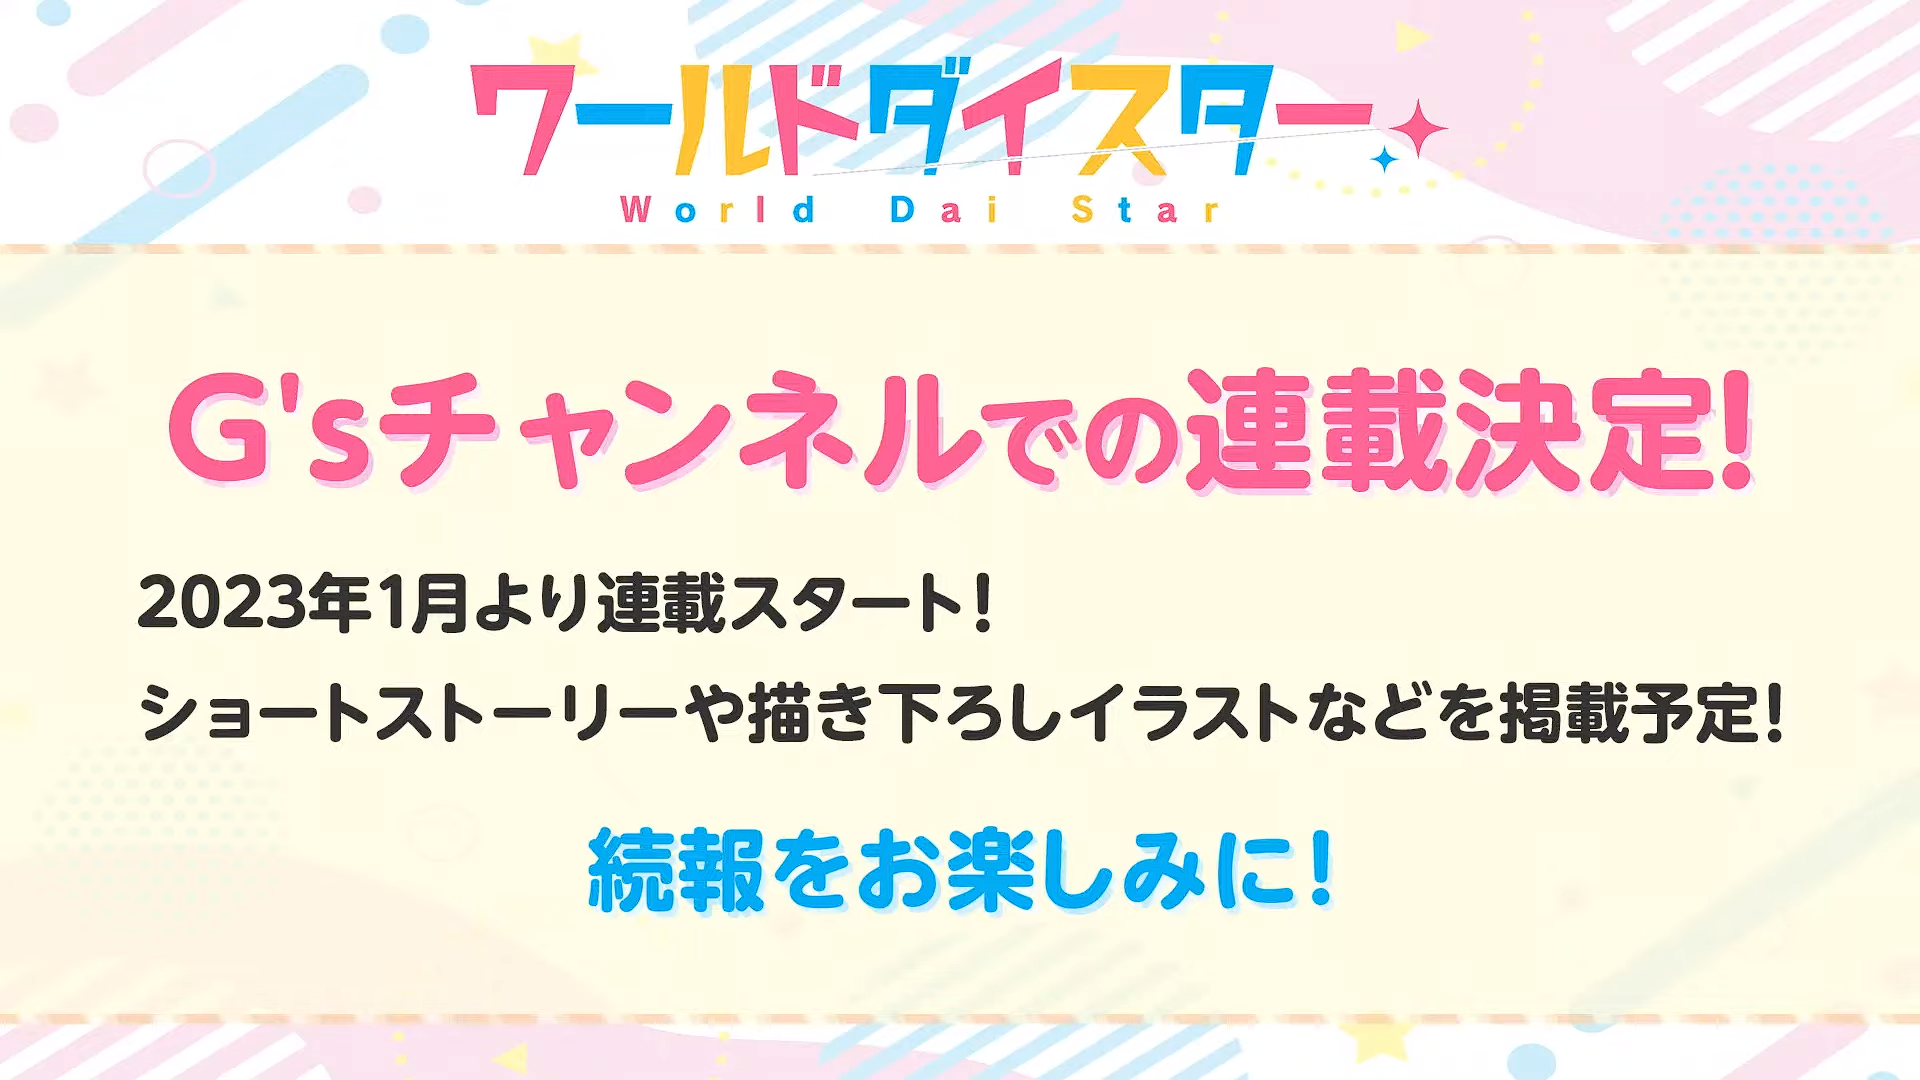 演剧少女企划《World Dai Star》预定2023 年推出电视动画与手机游戏插图6